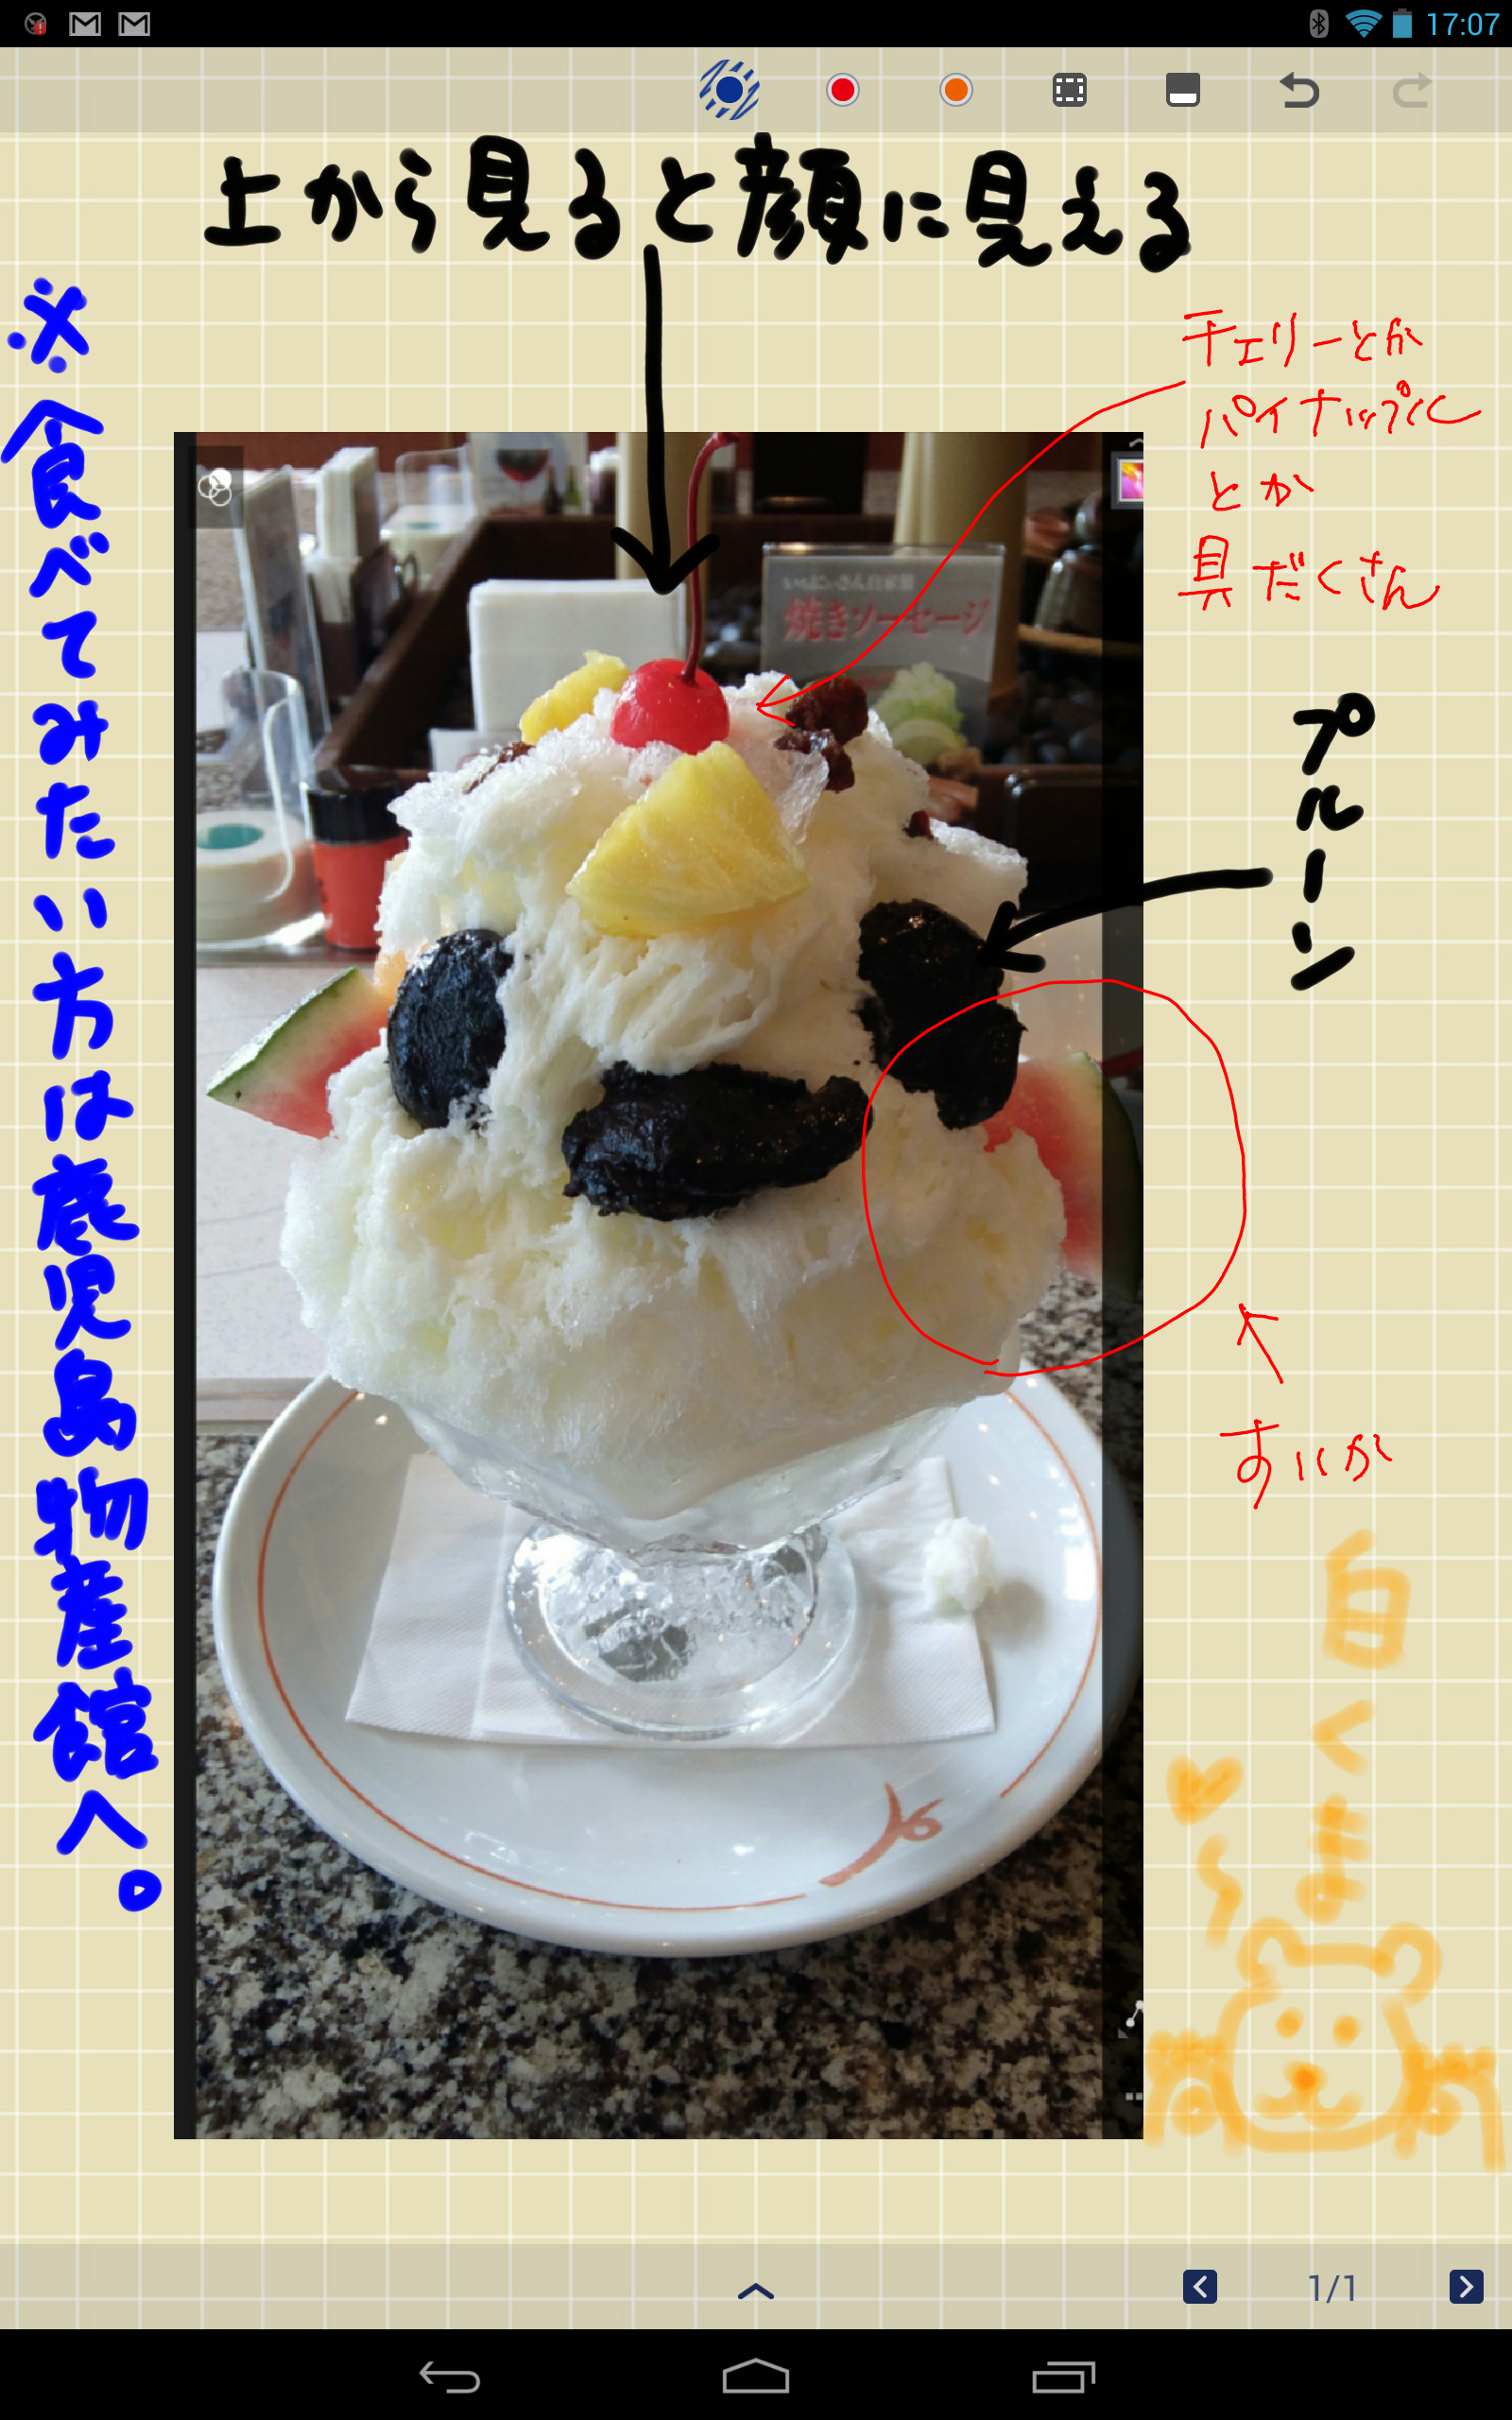 http://blogs.bizmakoto.jp/ayoshiok/Screenshot_2013-07-17-17-07-12.png